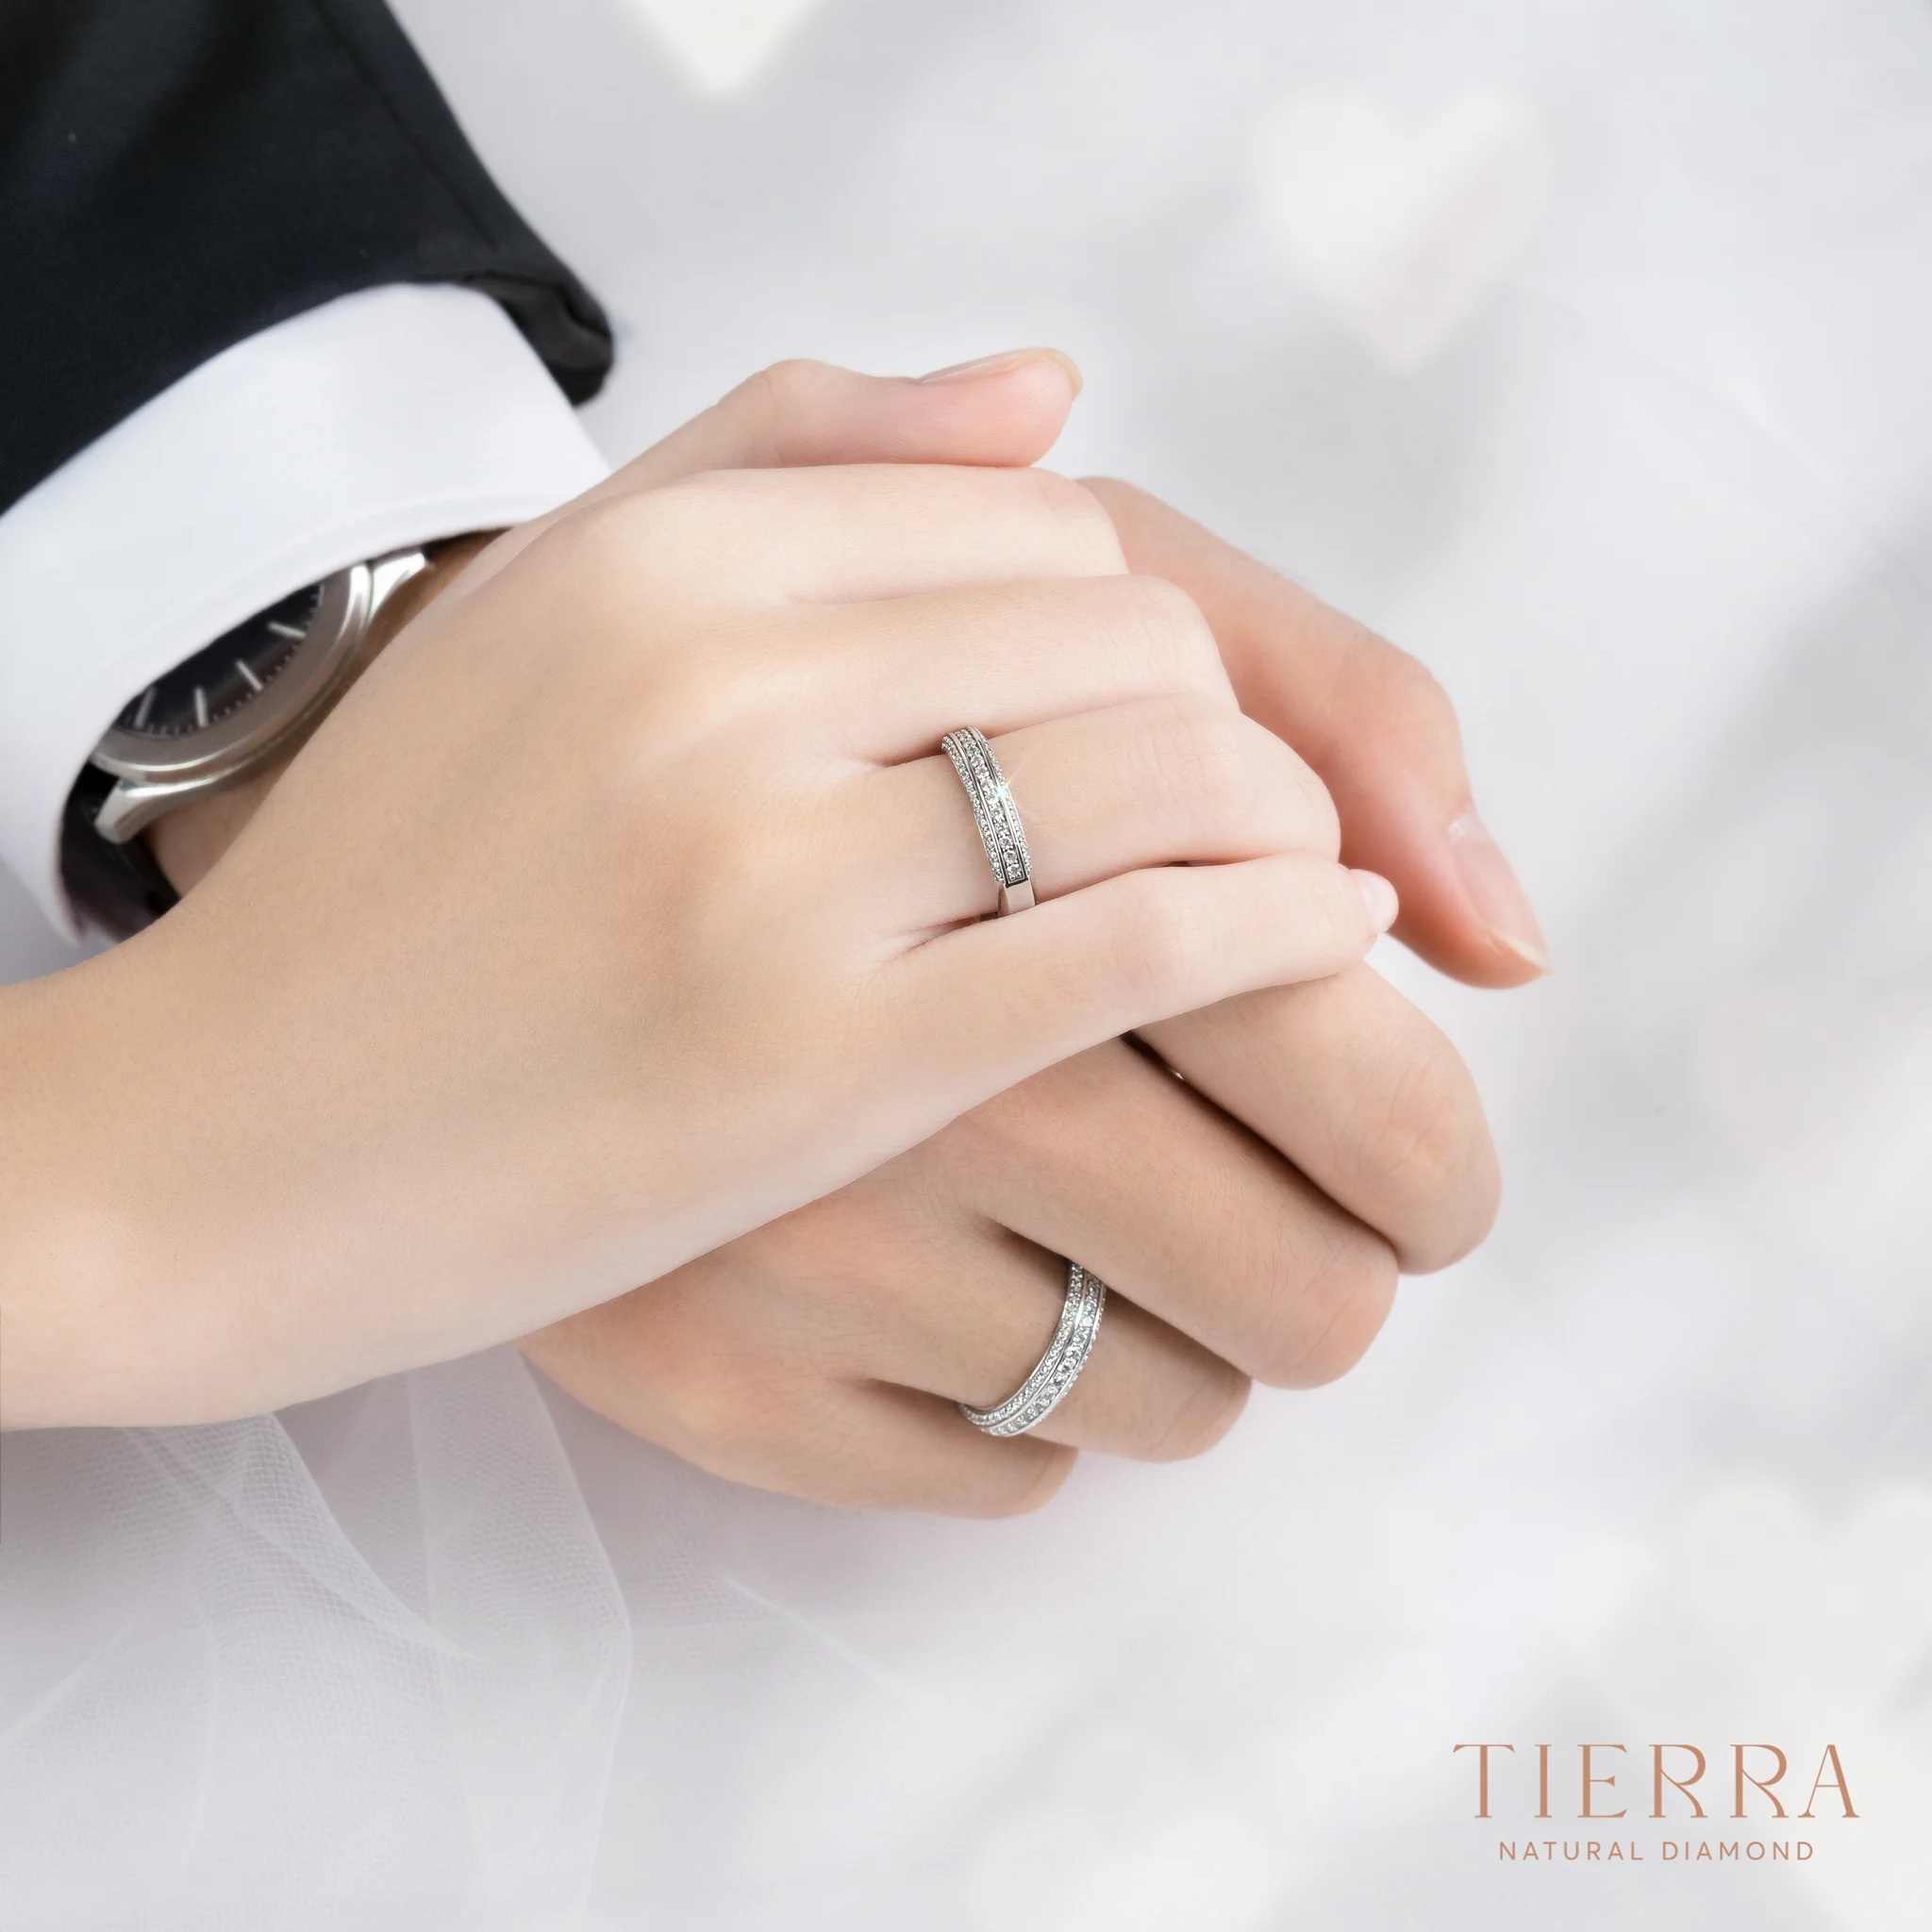 Vì sao thiết kế riêng nhẫn cưới - cầu hôn đang là xu hướng? Nên chọn thiết kế nhẫn riêng ở đâu?